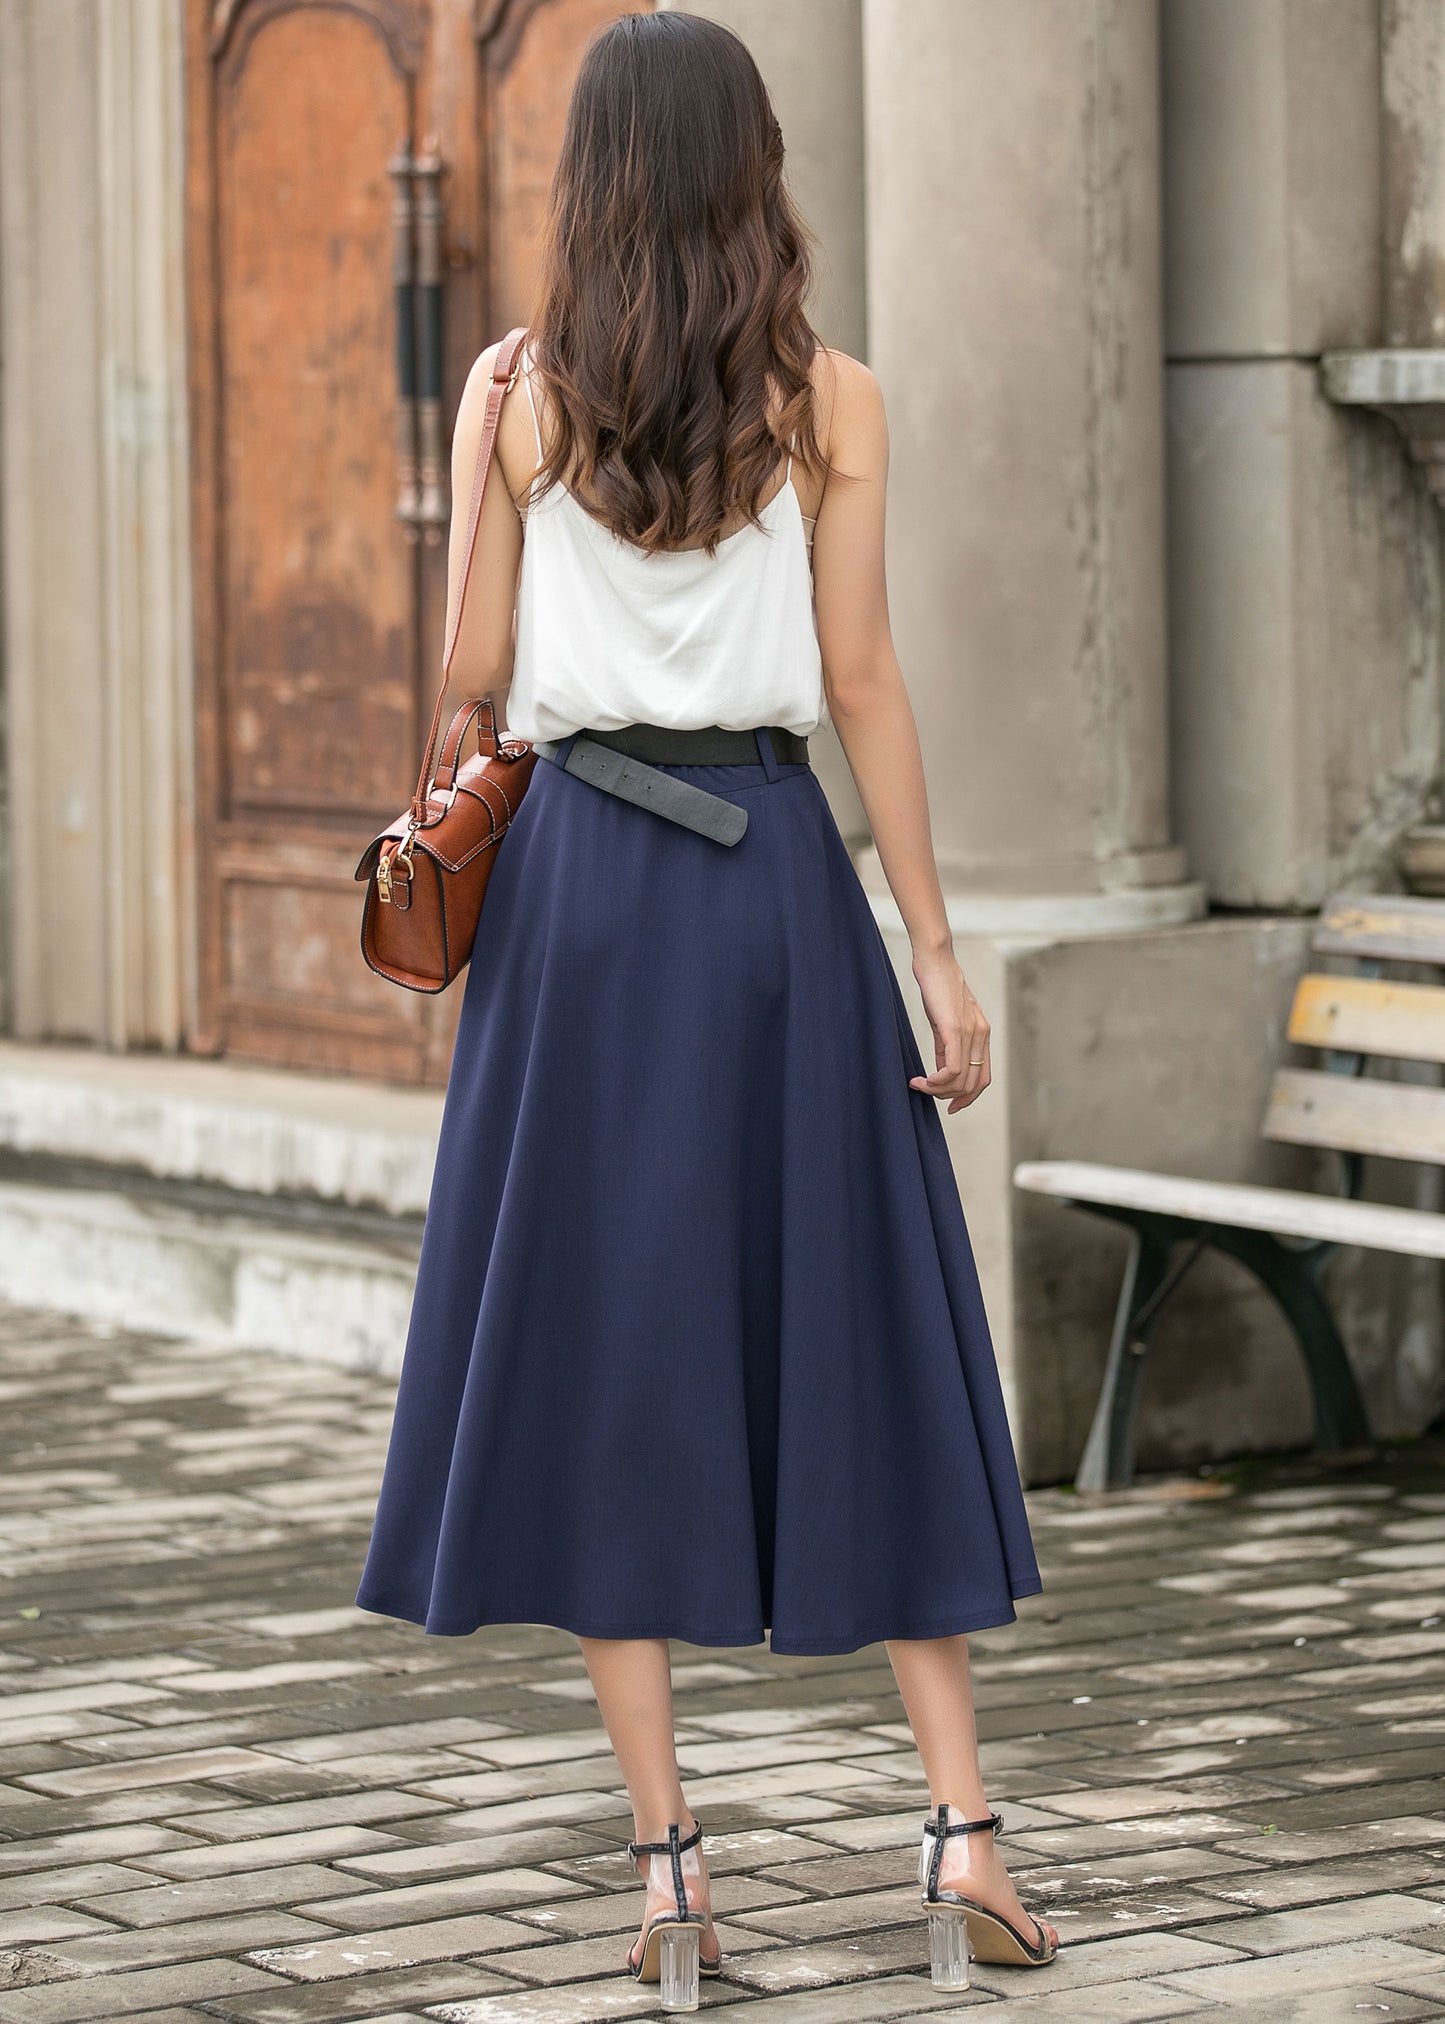 Elegant Navy Blue A-Line Skirt 3696#